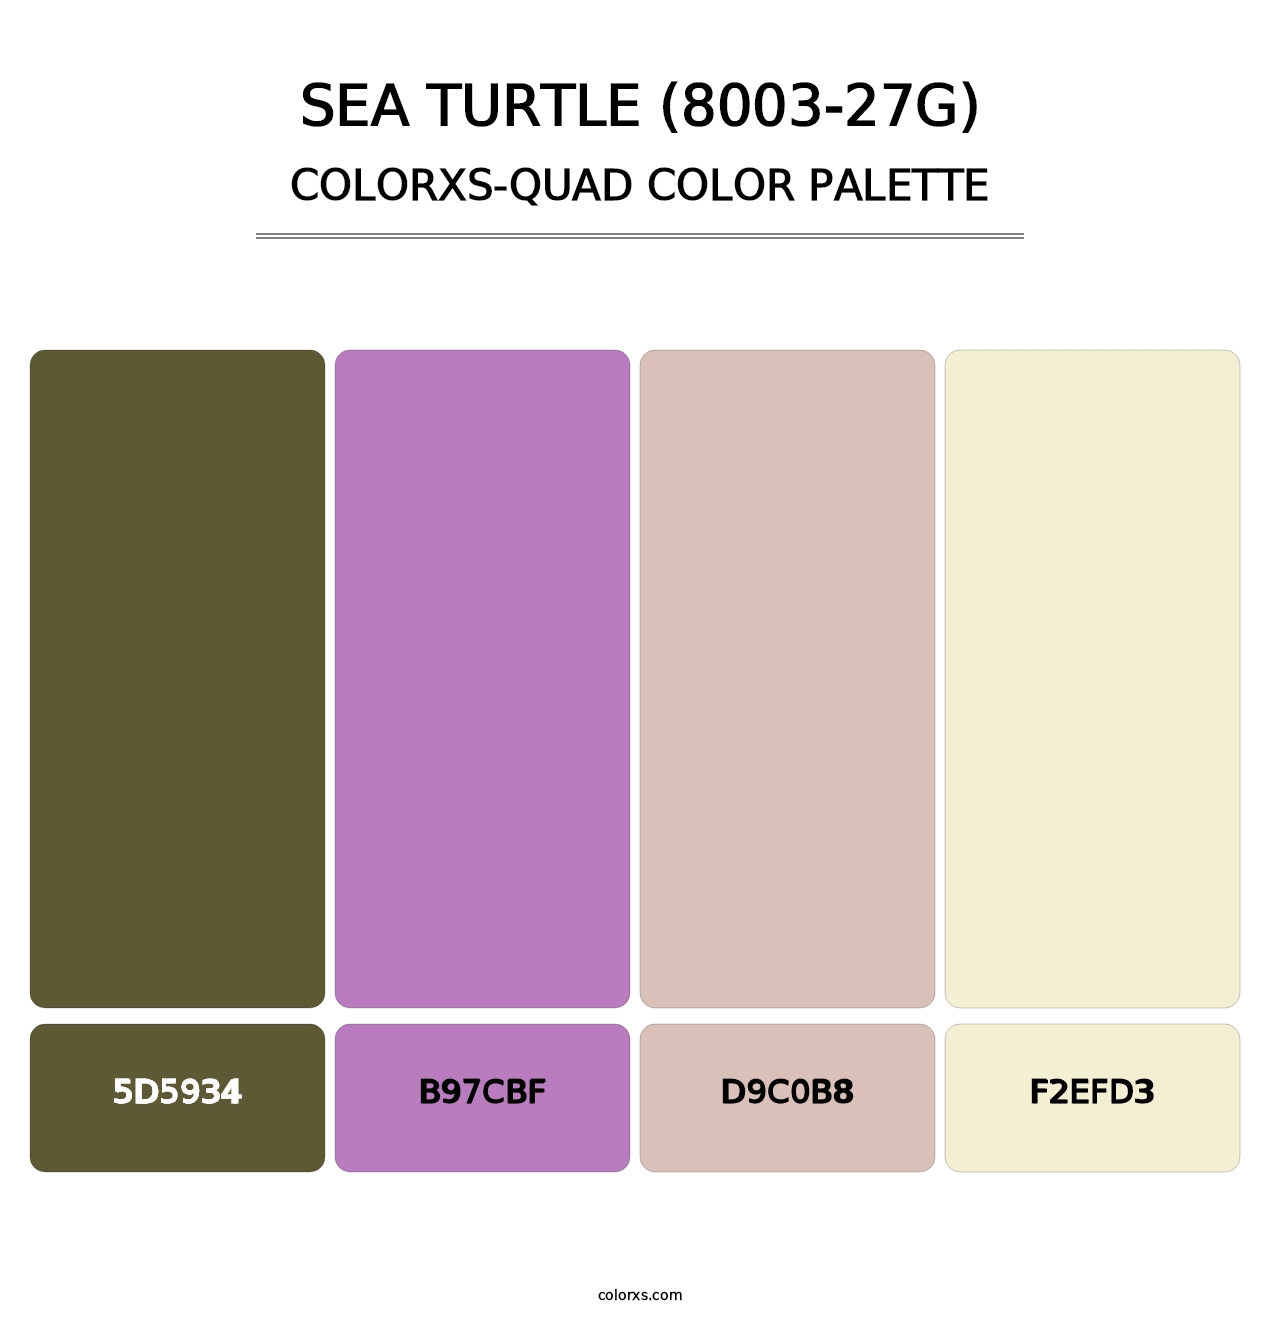 Sea Turtle (8003-27G) - Colorxs Quad Palette